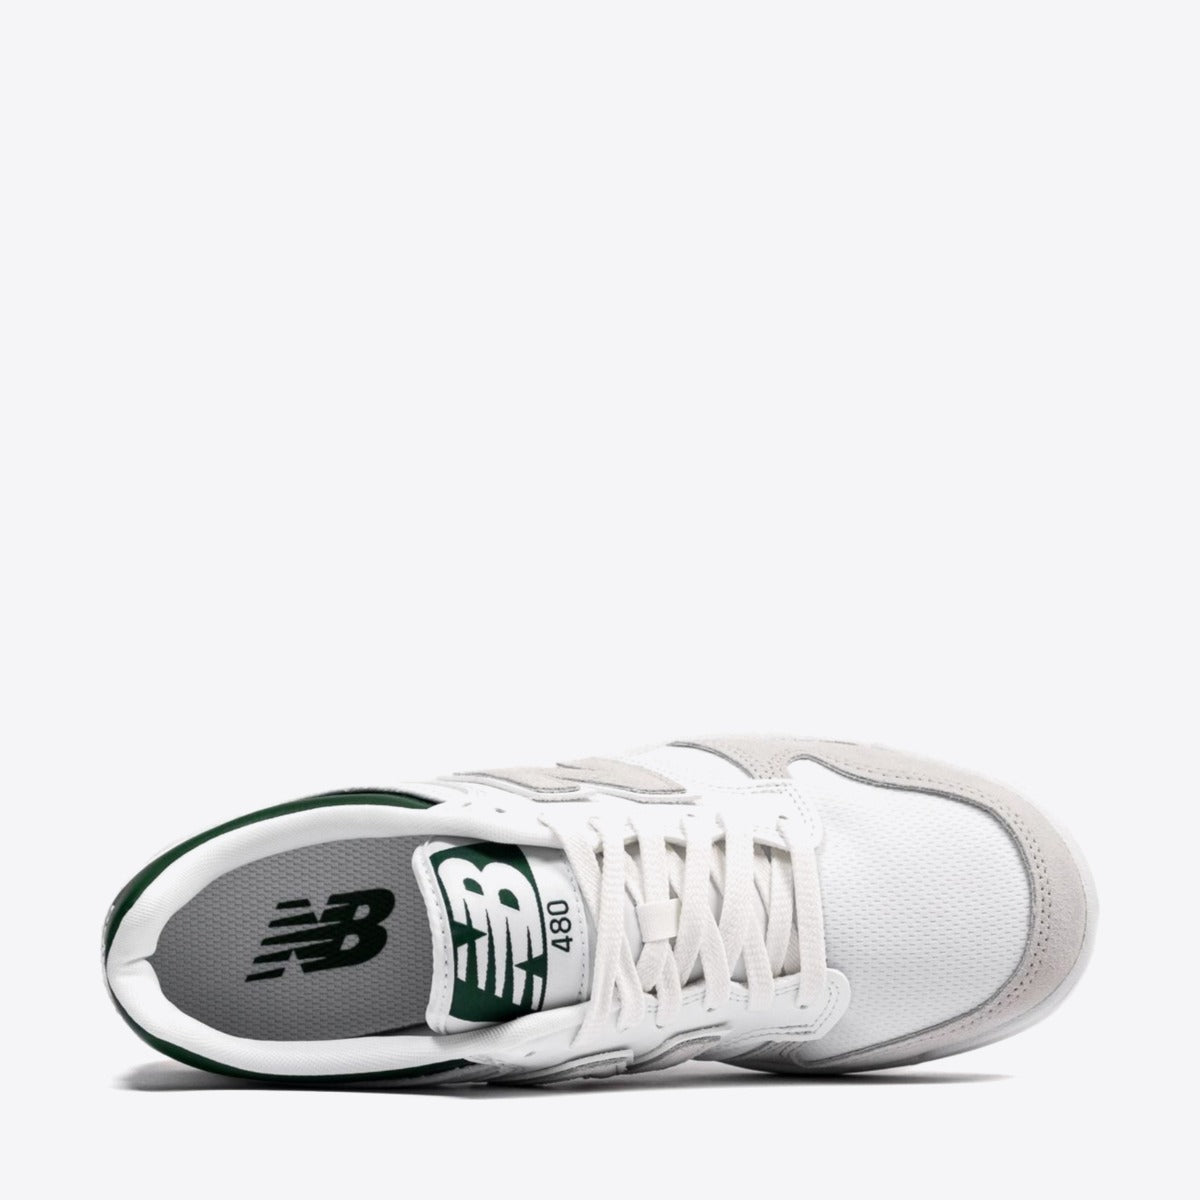 NEW BALANCE BB480 Sneaker White/Park Green